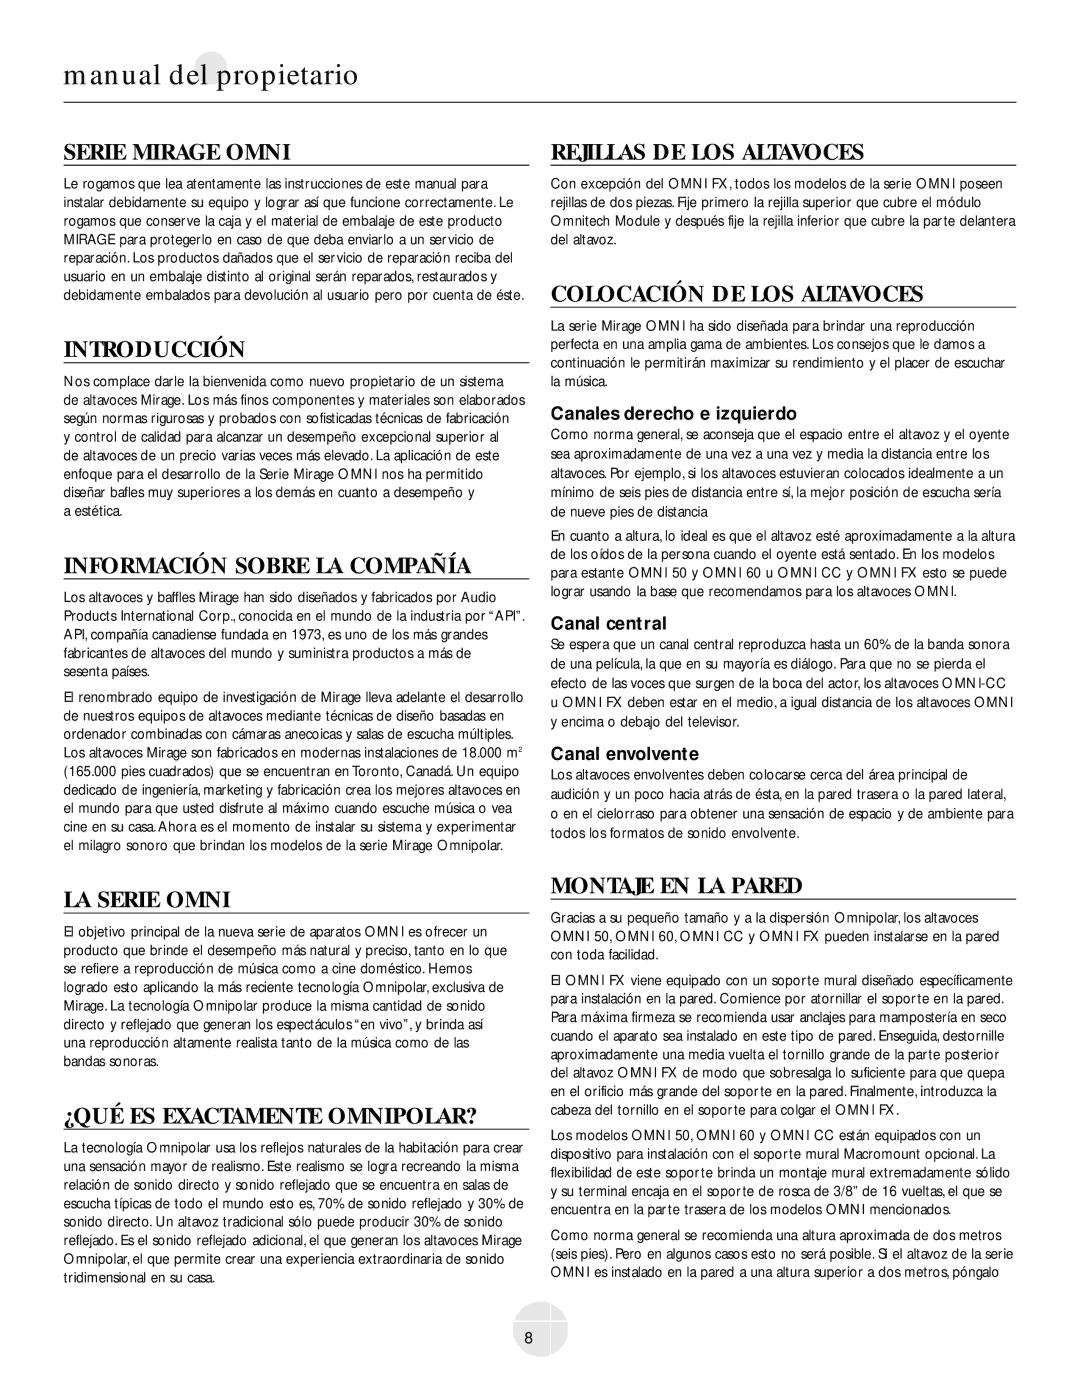 Mirage Loudspeakers OMNI CC Serie Mirage Omni, Introducción, Información Sobre LA Compañía, Rejillas DE LOS Altavoces 